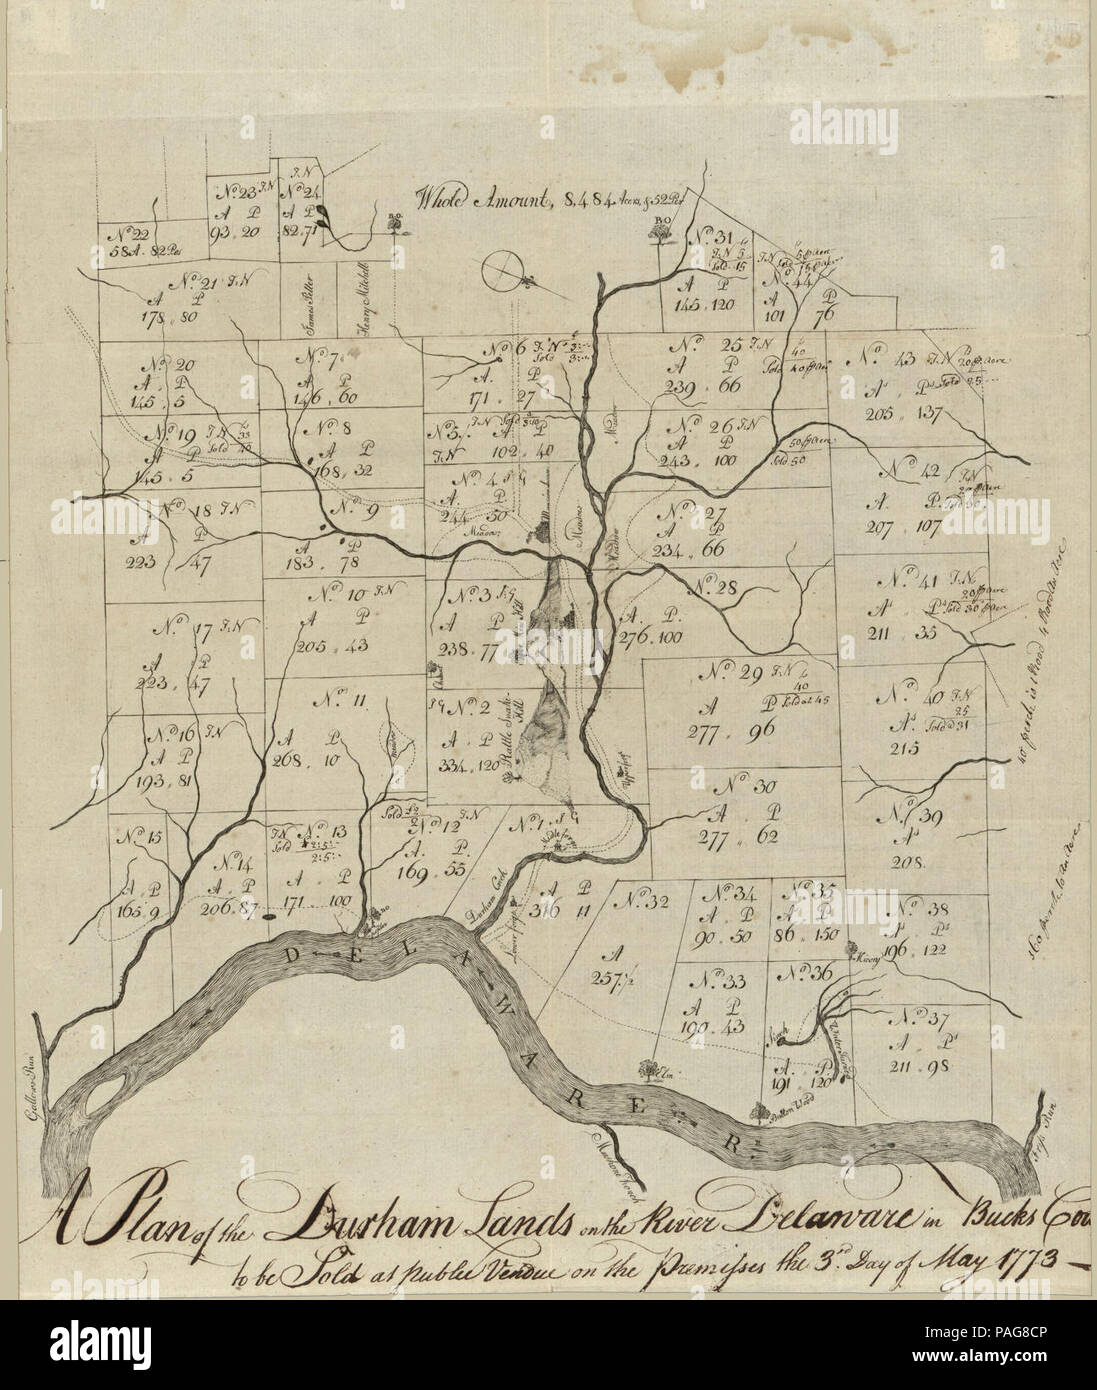 Un piano delle terre di Durham sul Fiume Delaware in Bucks Cou(nty) - per essere venduto al pubblico vendue sulle premesse il 3° giorno di maggio 1773. Foto Stock